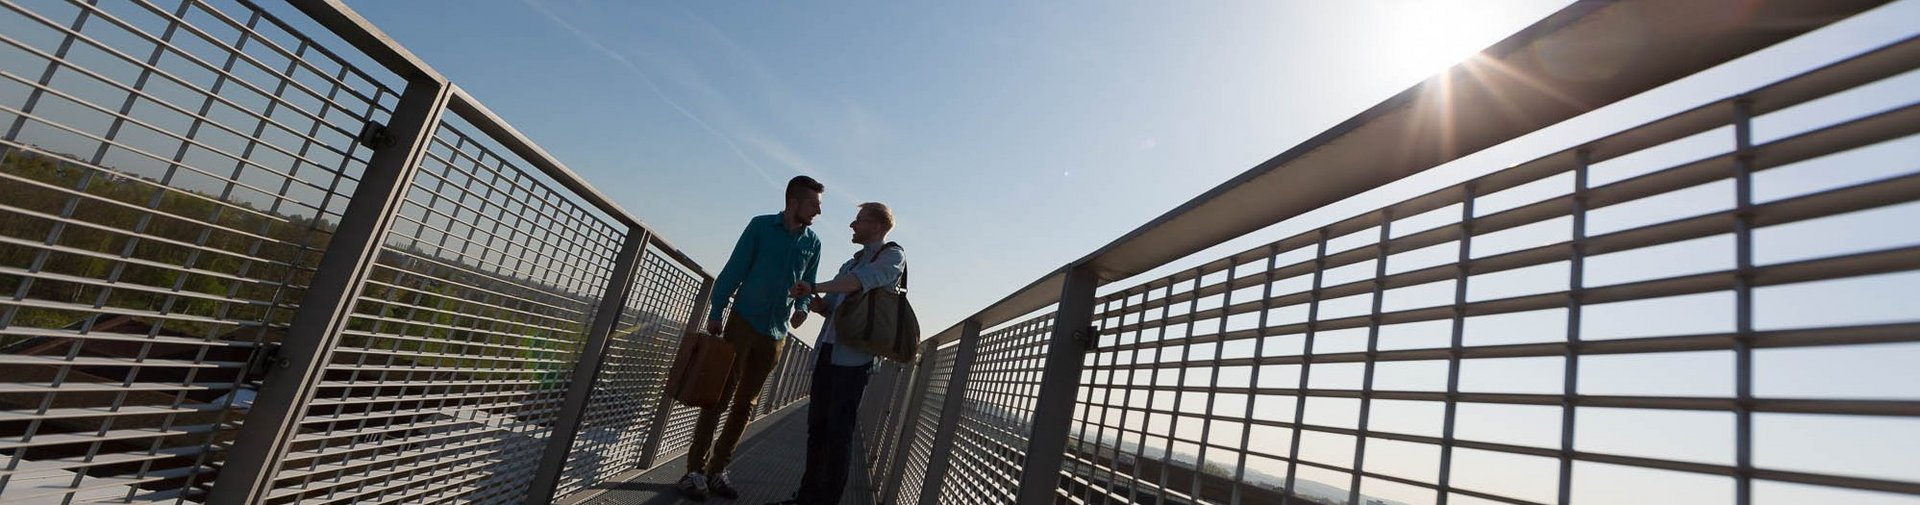 Zwei junge Männer unterhalten sich auf den Skywalk auf Phoenix-West in Dortmund